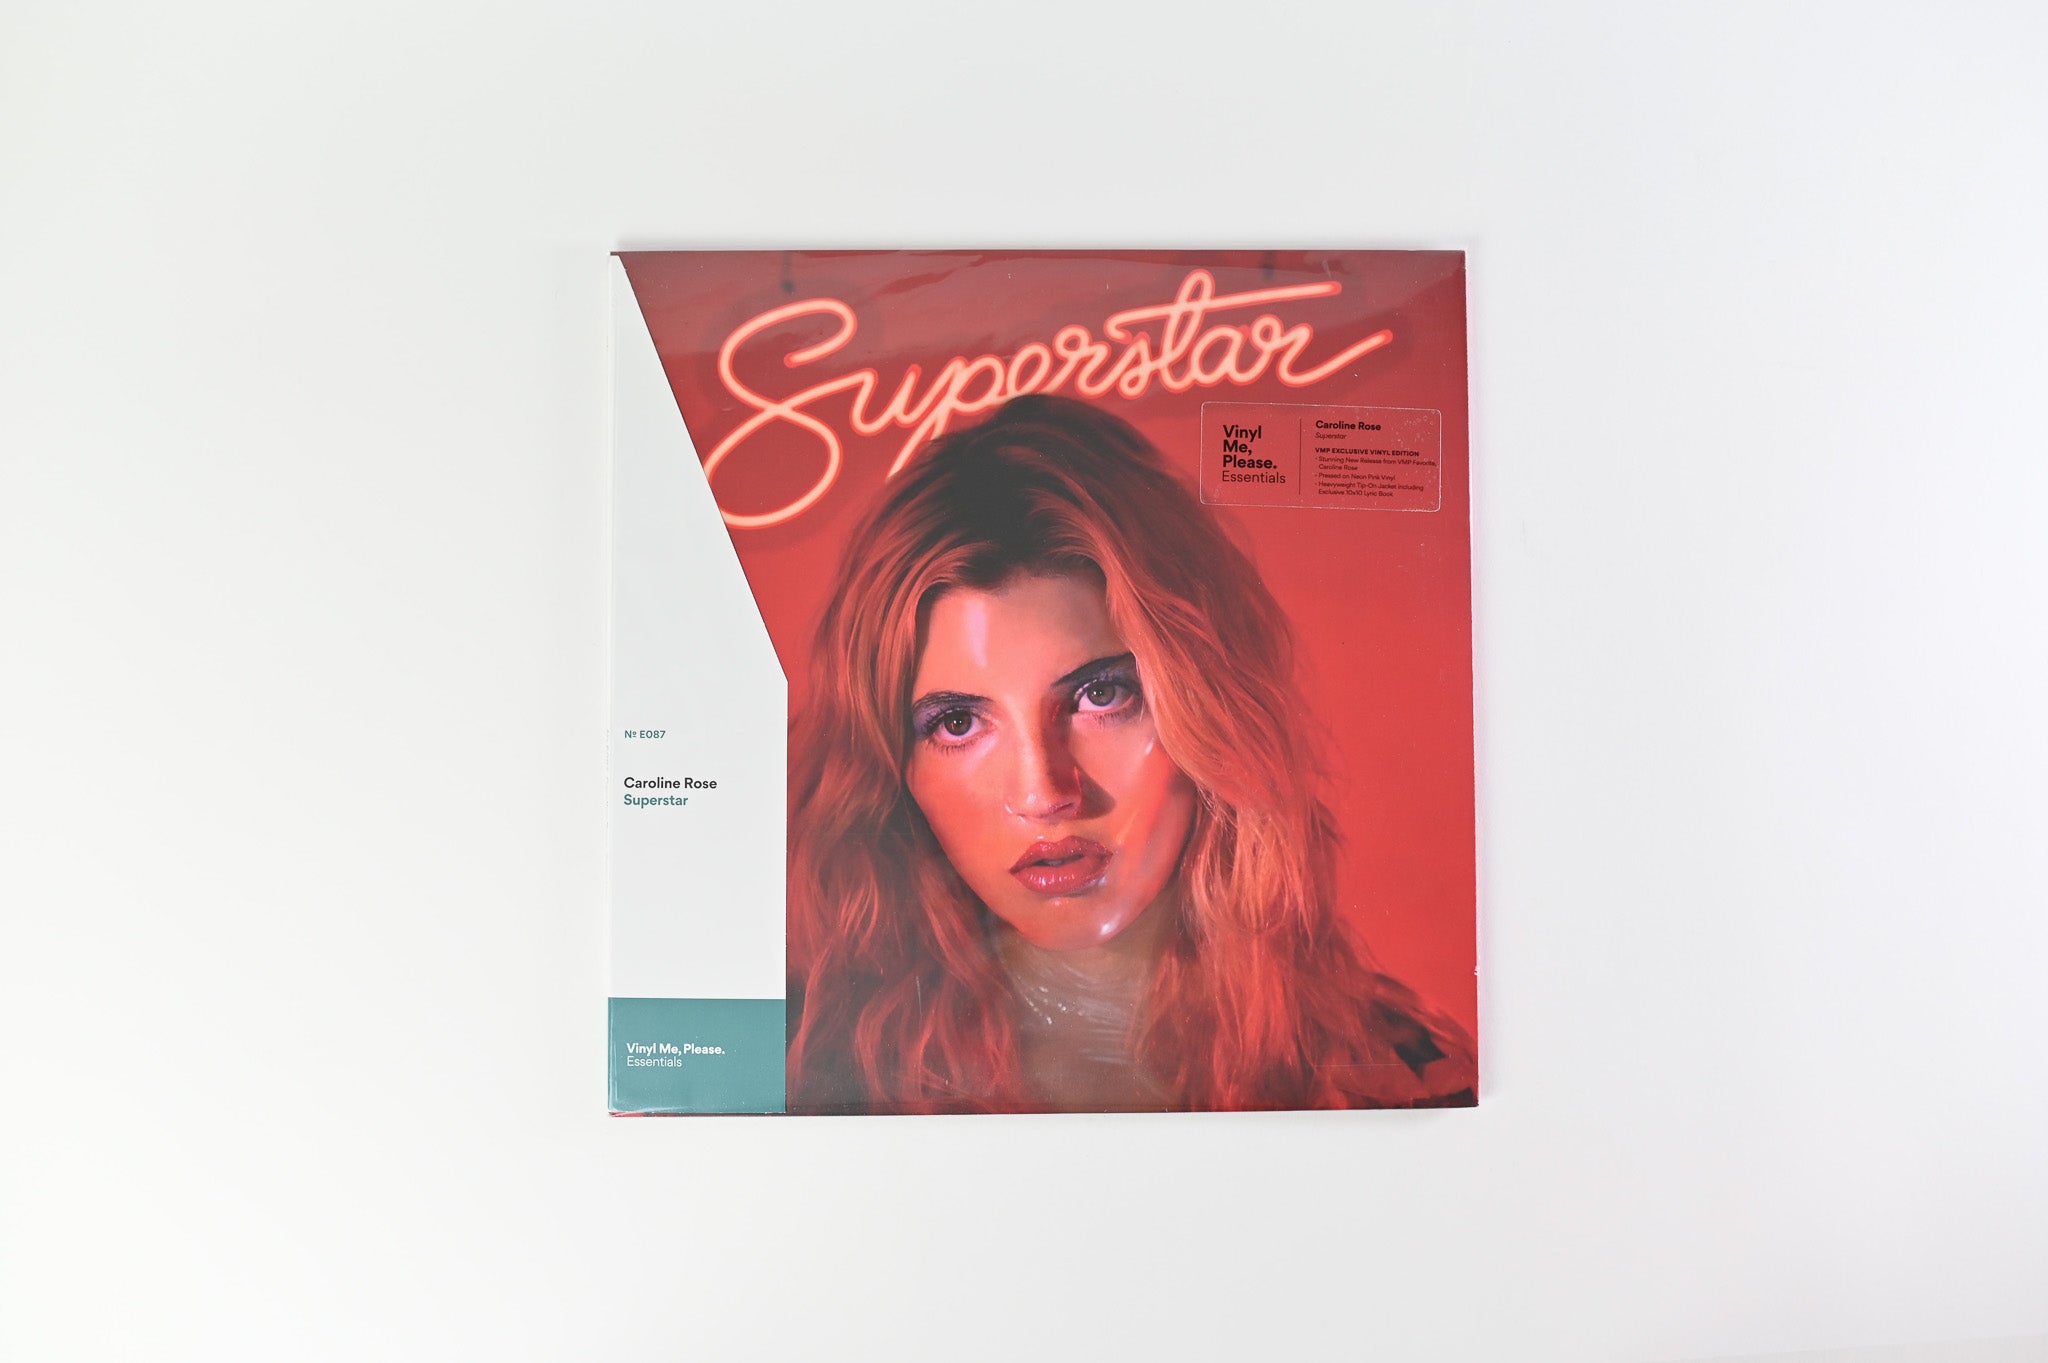 Caroline Rose - Superstar on New West Records - Pink Vinyl